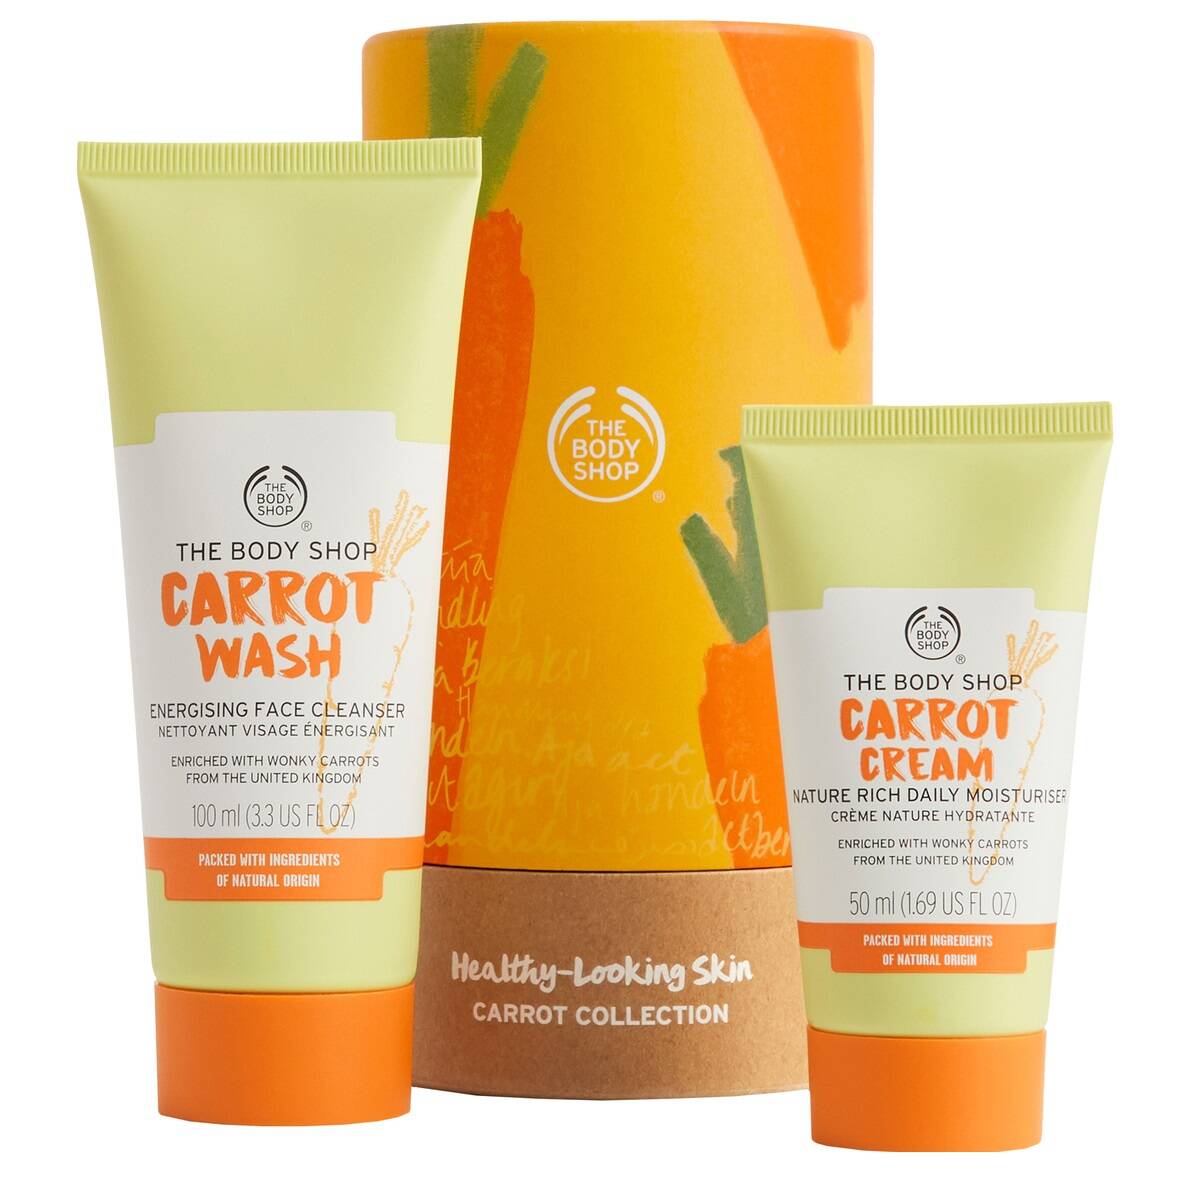 کرم روزانه مرطوب کننده هویج بادی شاپ اصل The Body Shop Carrot Cream حجم 50 میل | روشن کننده و آبرسانی 72 ساعته ایده آل برای پوست نرمال تا خشک، دهیدراته و کدر